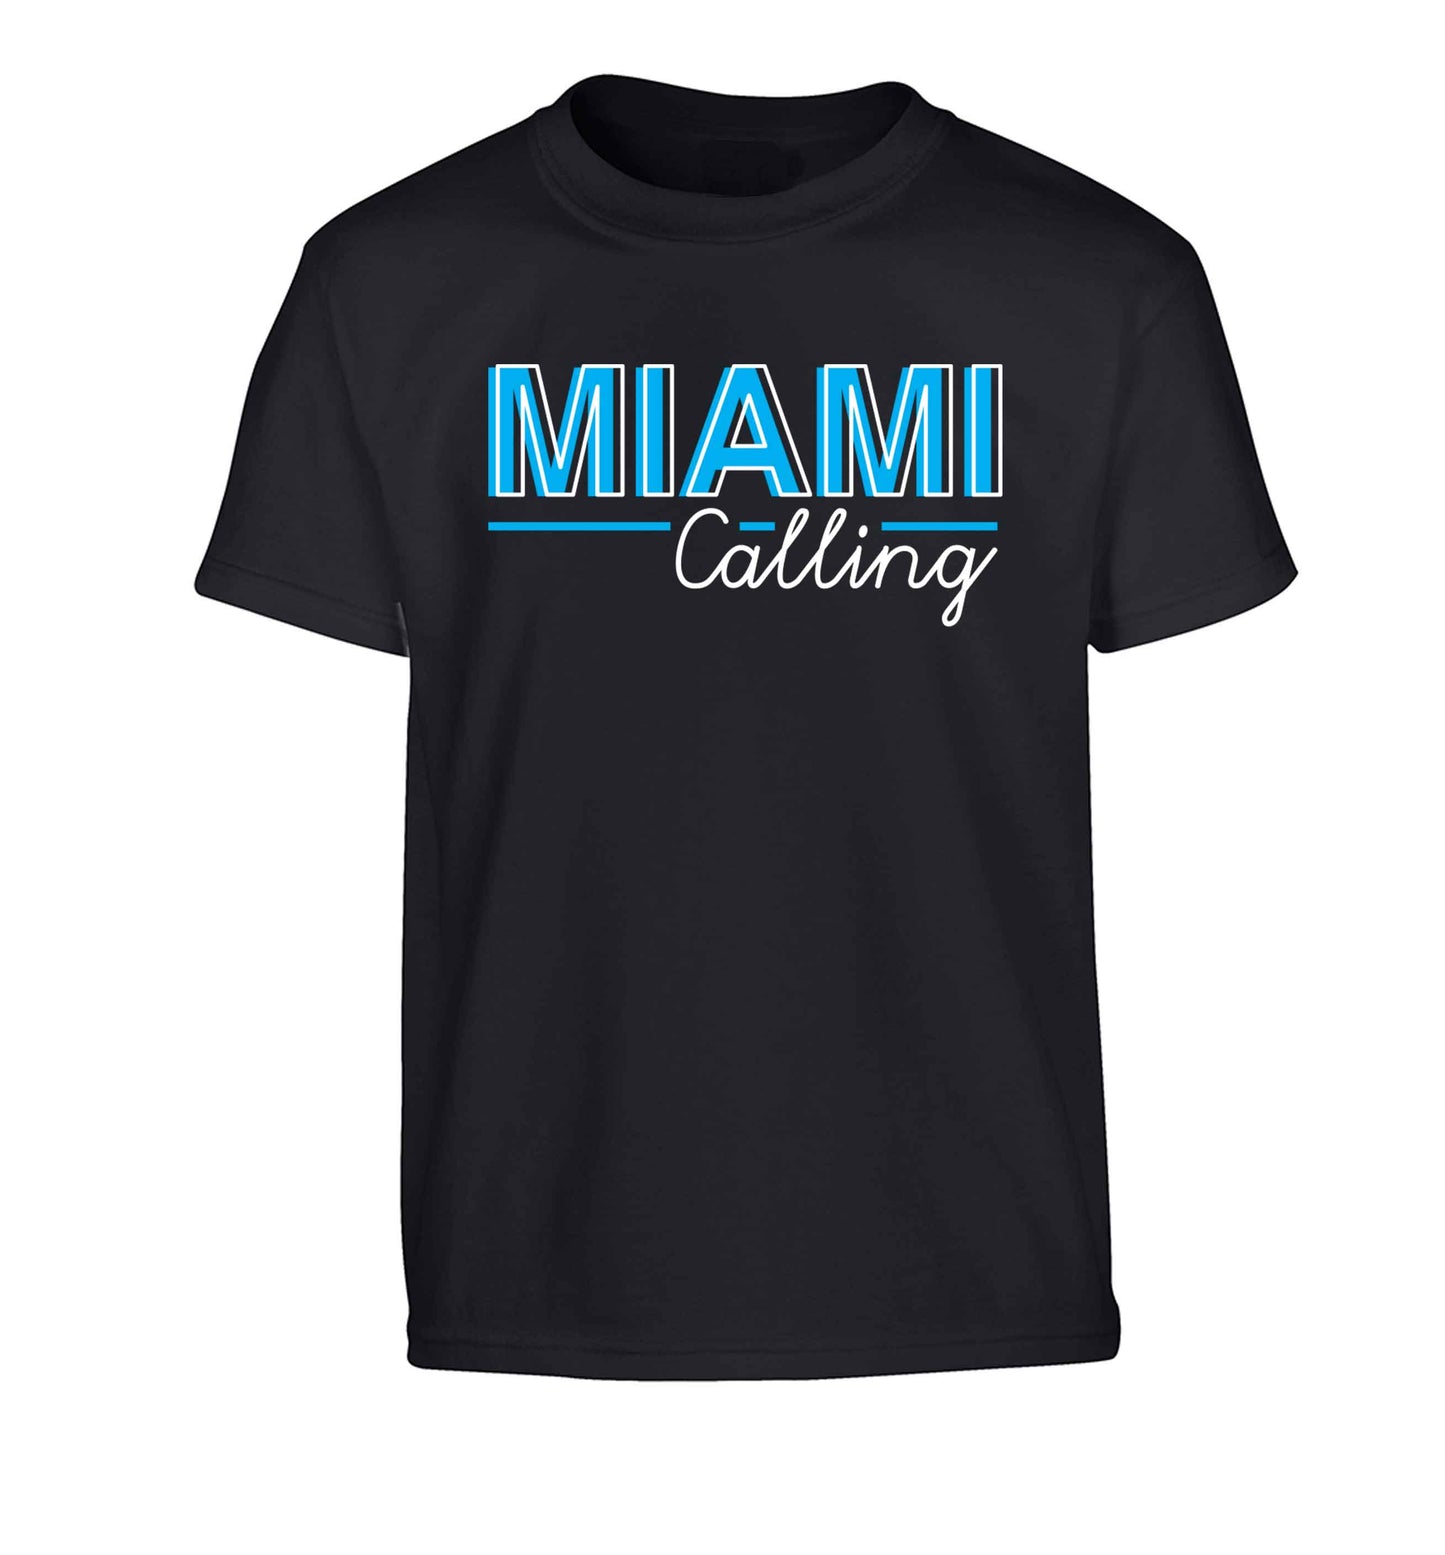 Miami calling Children's black Tshirt 12-13 Years